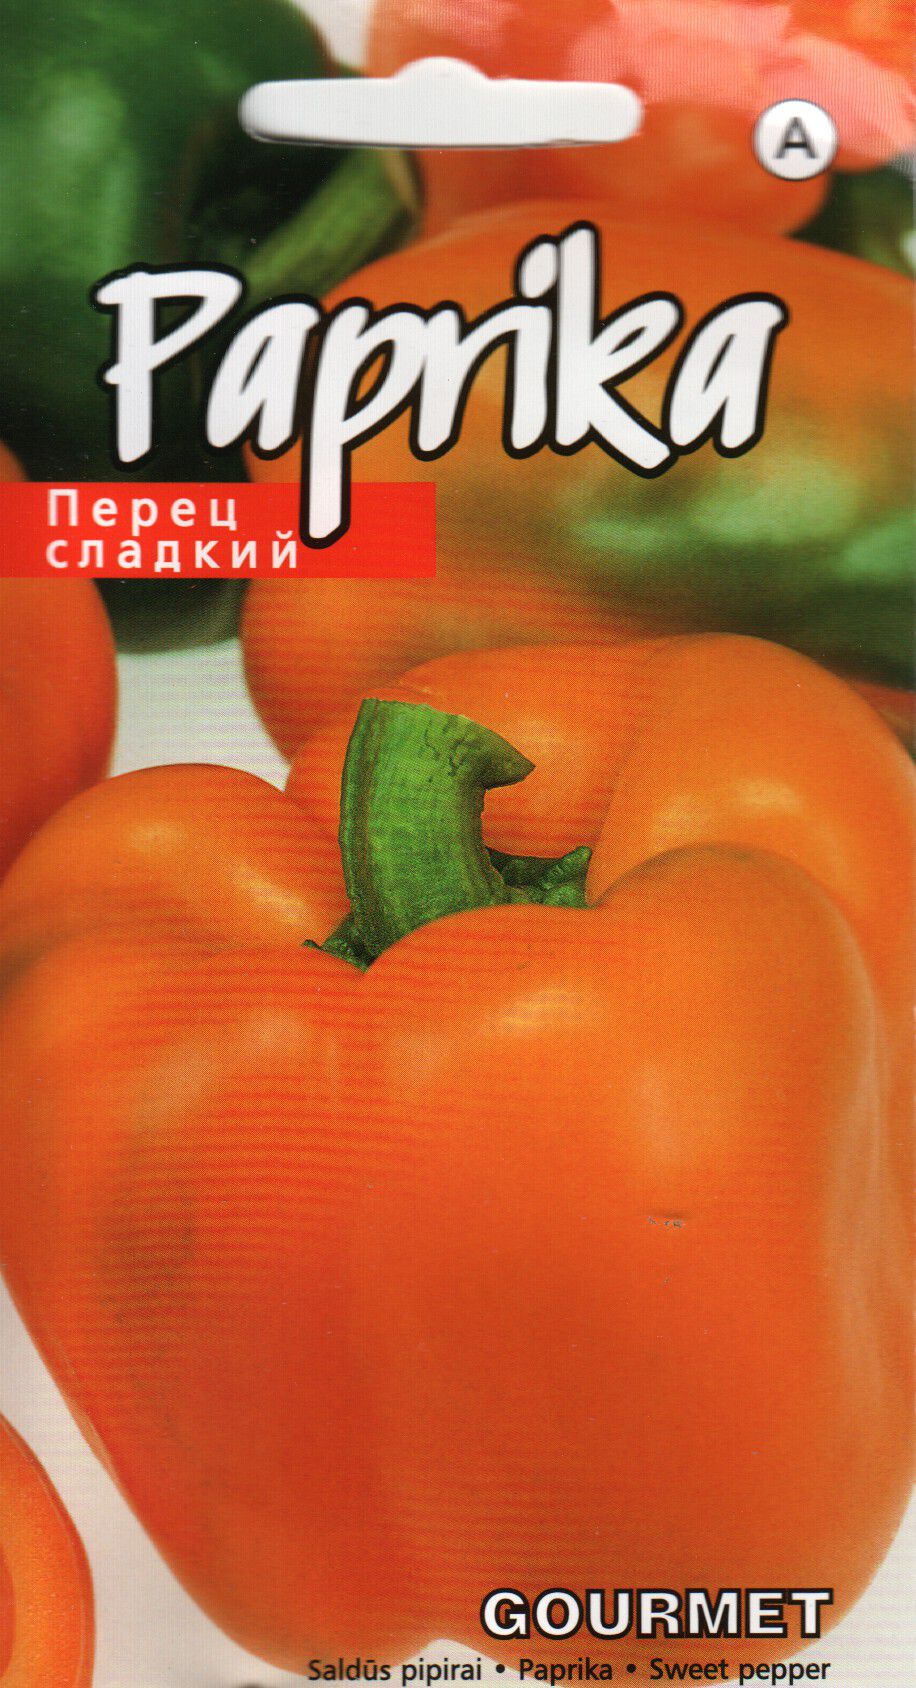 Paprika Gourmet